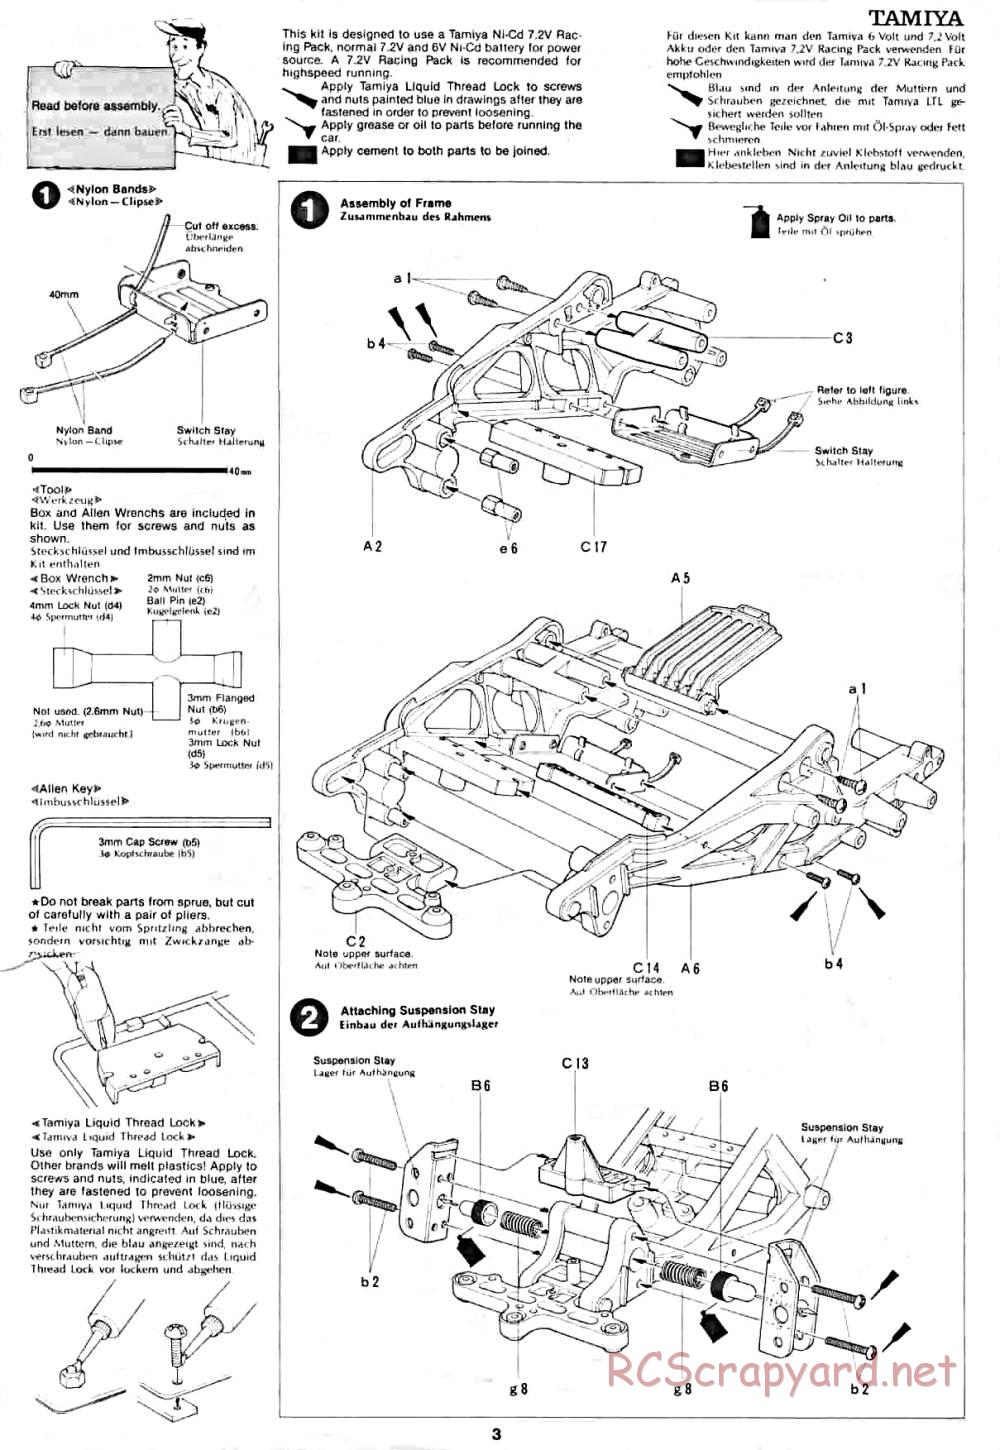 Tamiya - Lancia Rally - 58040 - Manual - Page 3